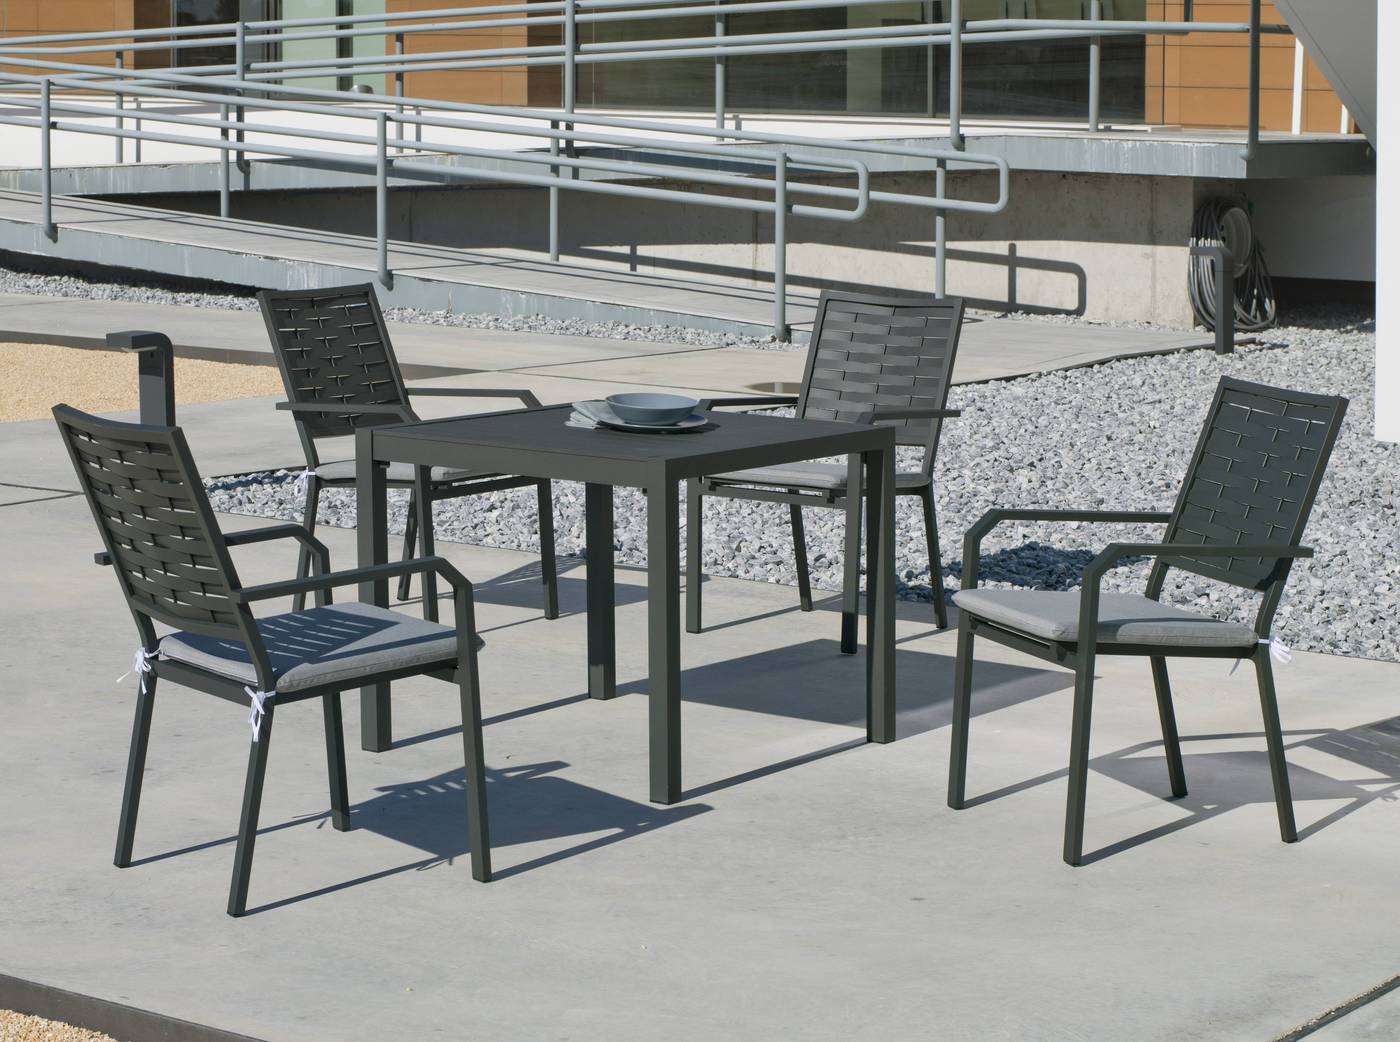 Conjunto de aluminio luxe para jardín o terraza: Mesa cuadrada 90 cm. + 4 sillones. Disponible en color blanco, bronce, antracita y champagne.